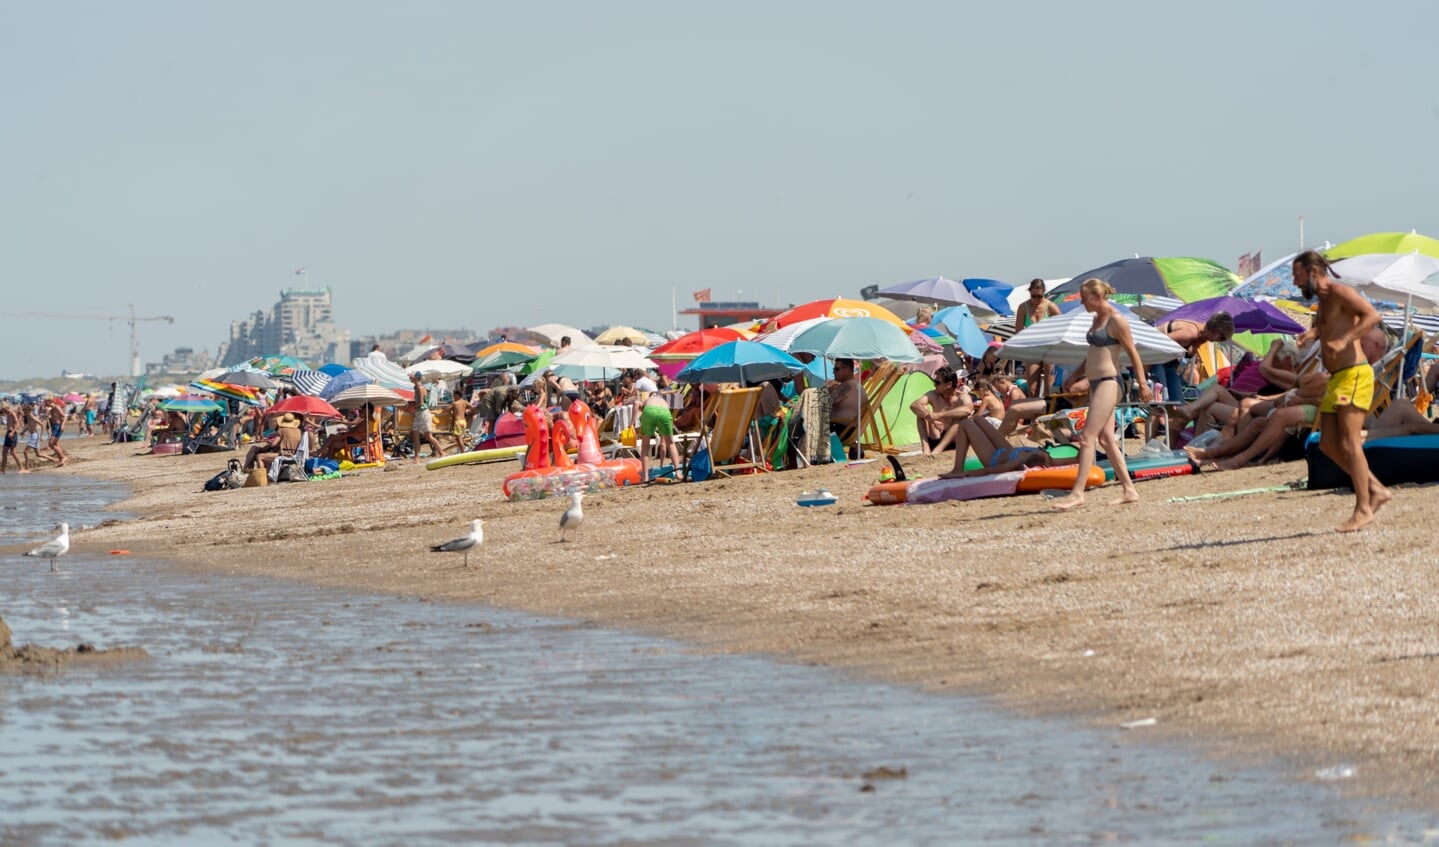 Bij de 38 graden in juli, was het alleen met een parasol uit te houden op het strand.